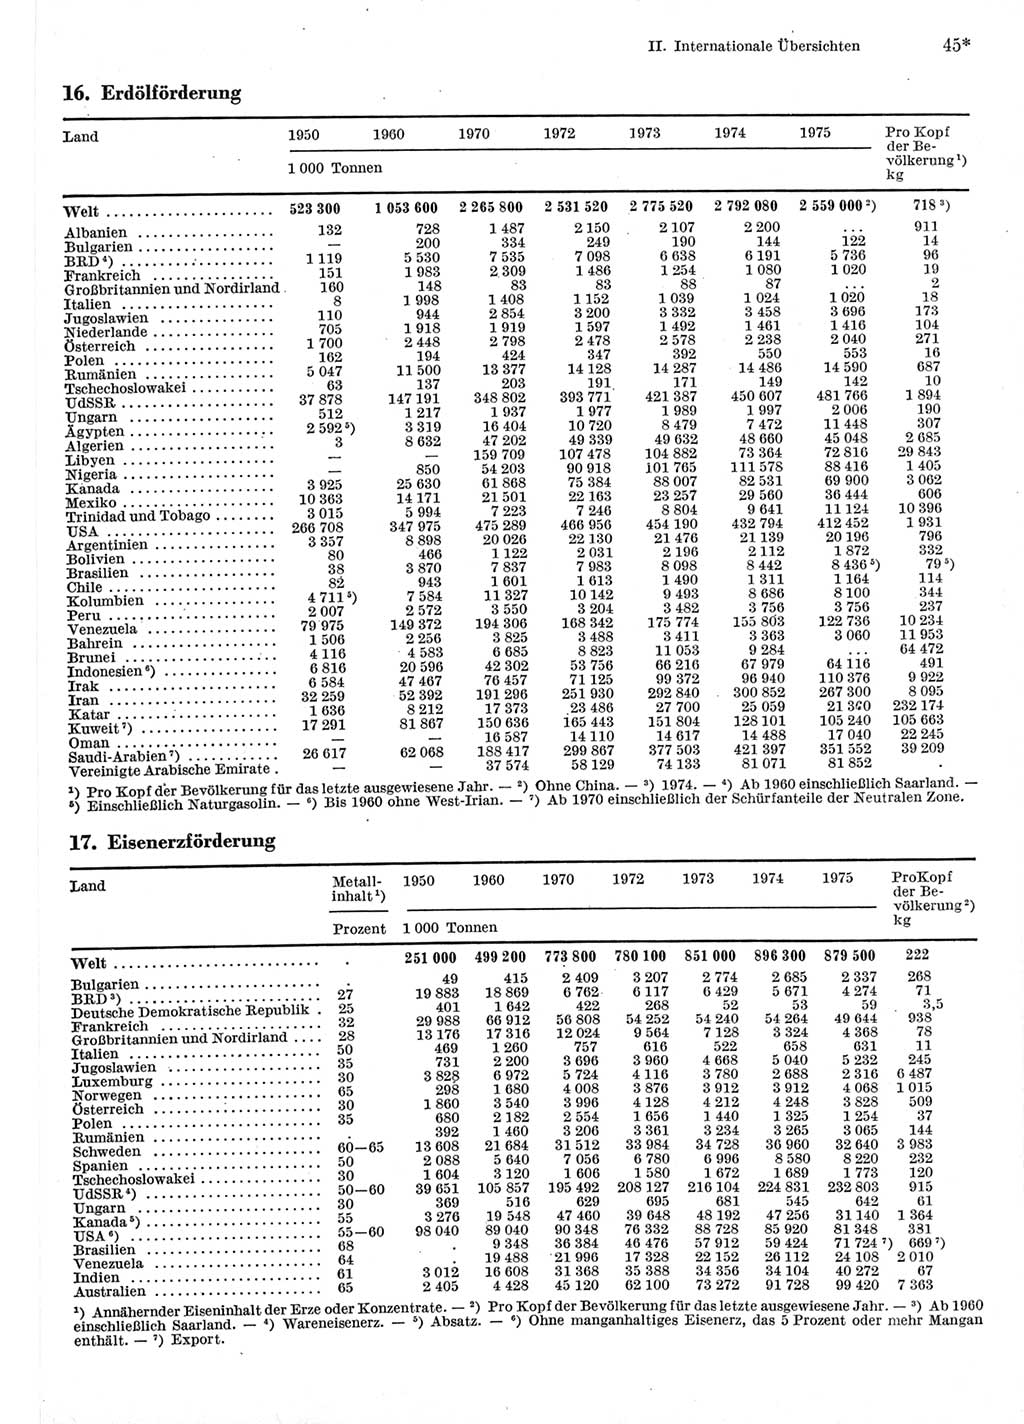 Statistisches Jahrbuch der Deutschen Demokratischen Republik (DDR) 1977, Seite 45 (Stat. Jb. DDR 1977, S. 45)